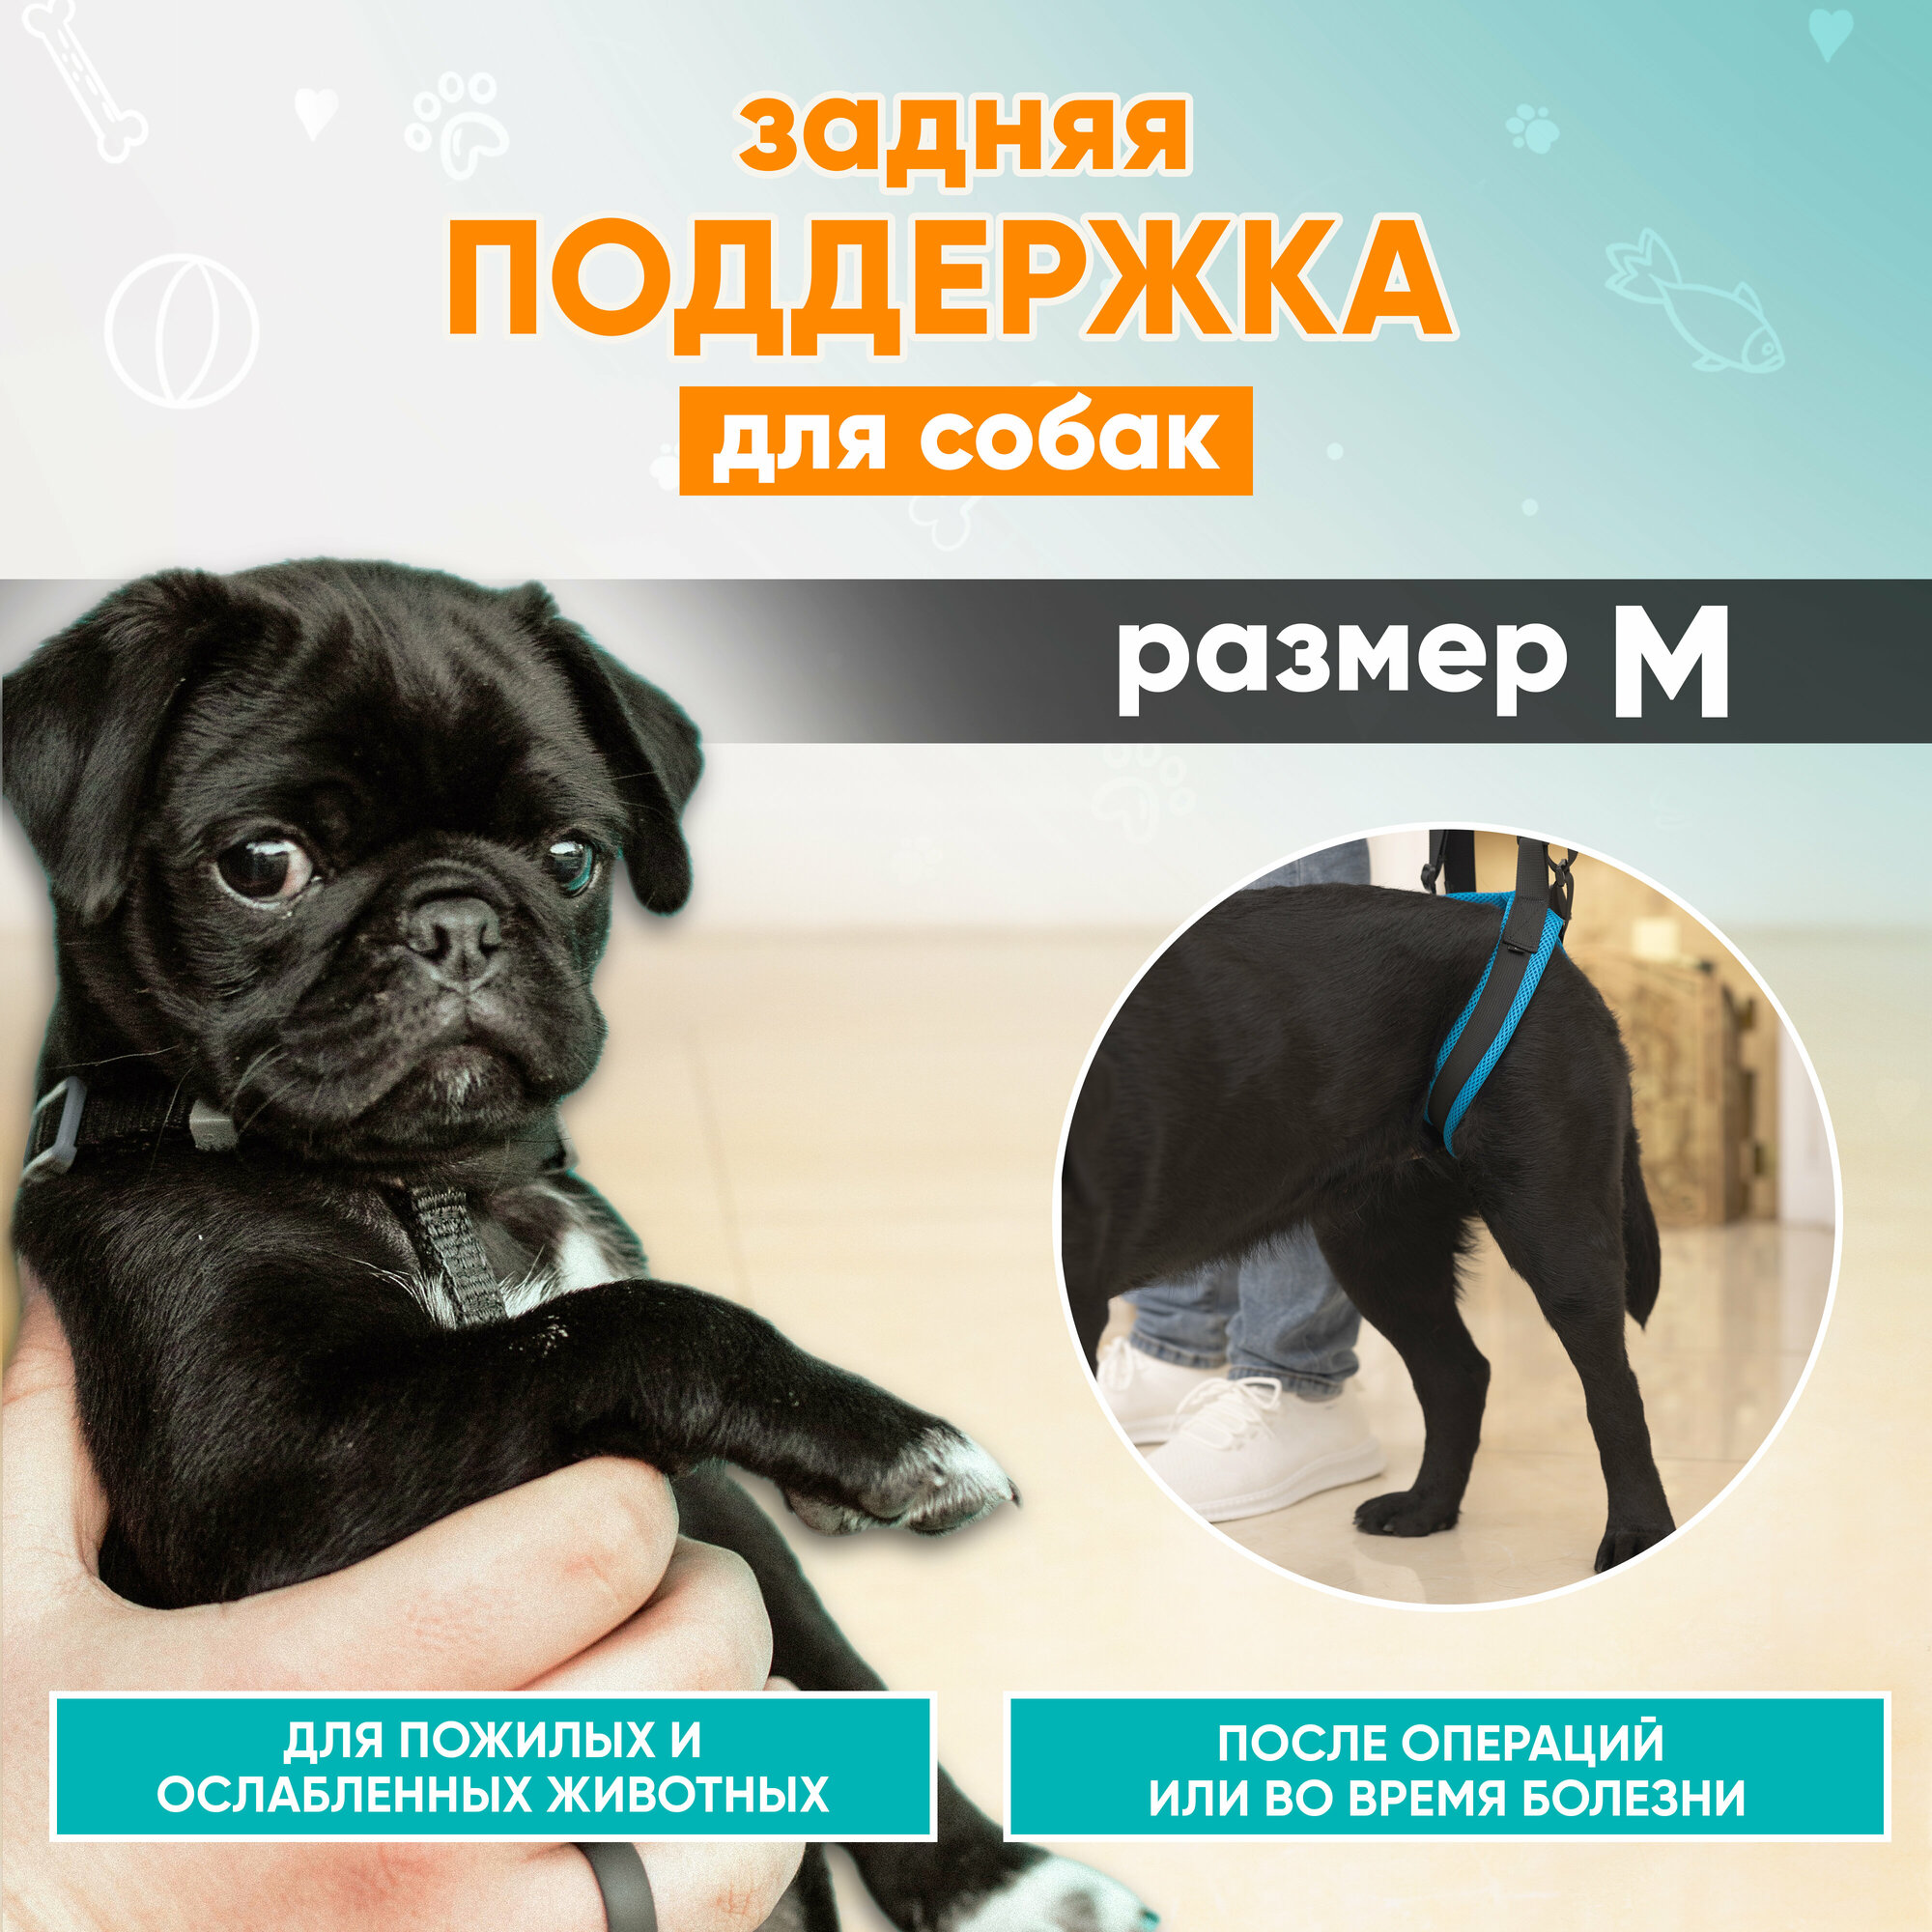 Ходунки для собак, поддержка для собак задняя, поддержка для пожилых собак, шлейка для собак ортопедическая Mr Dog M